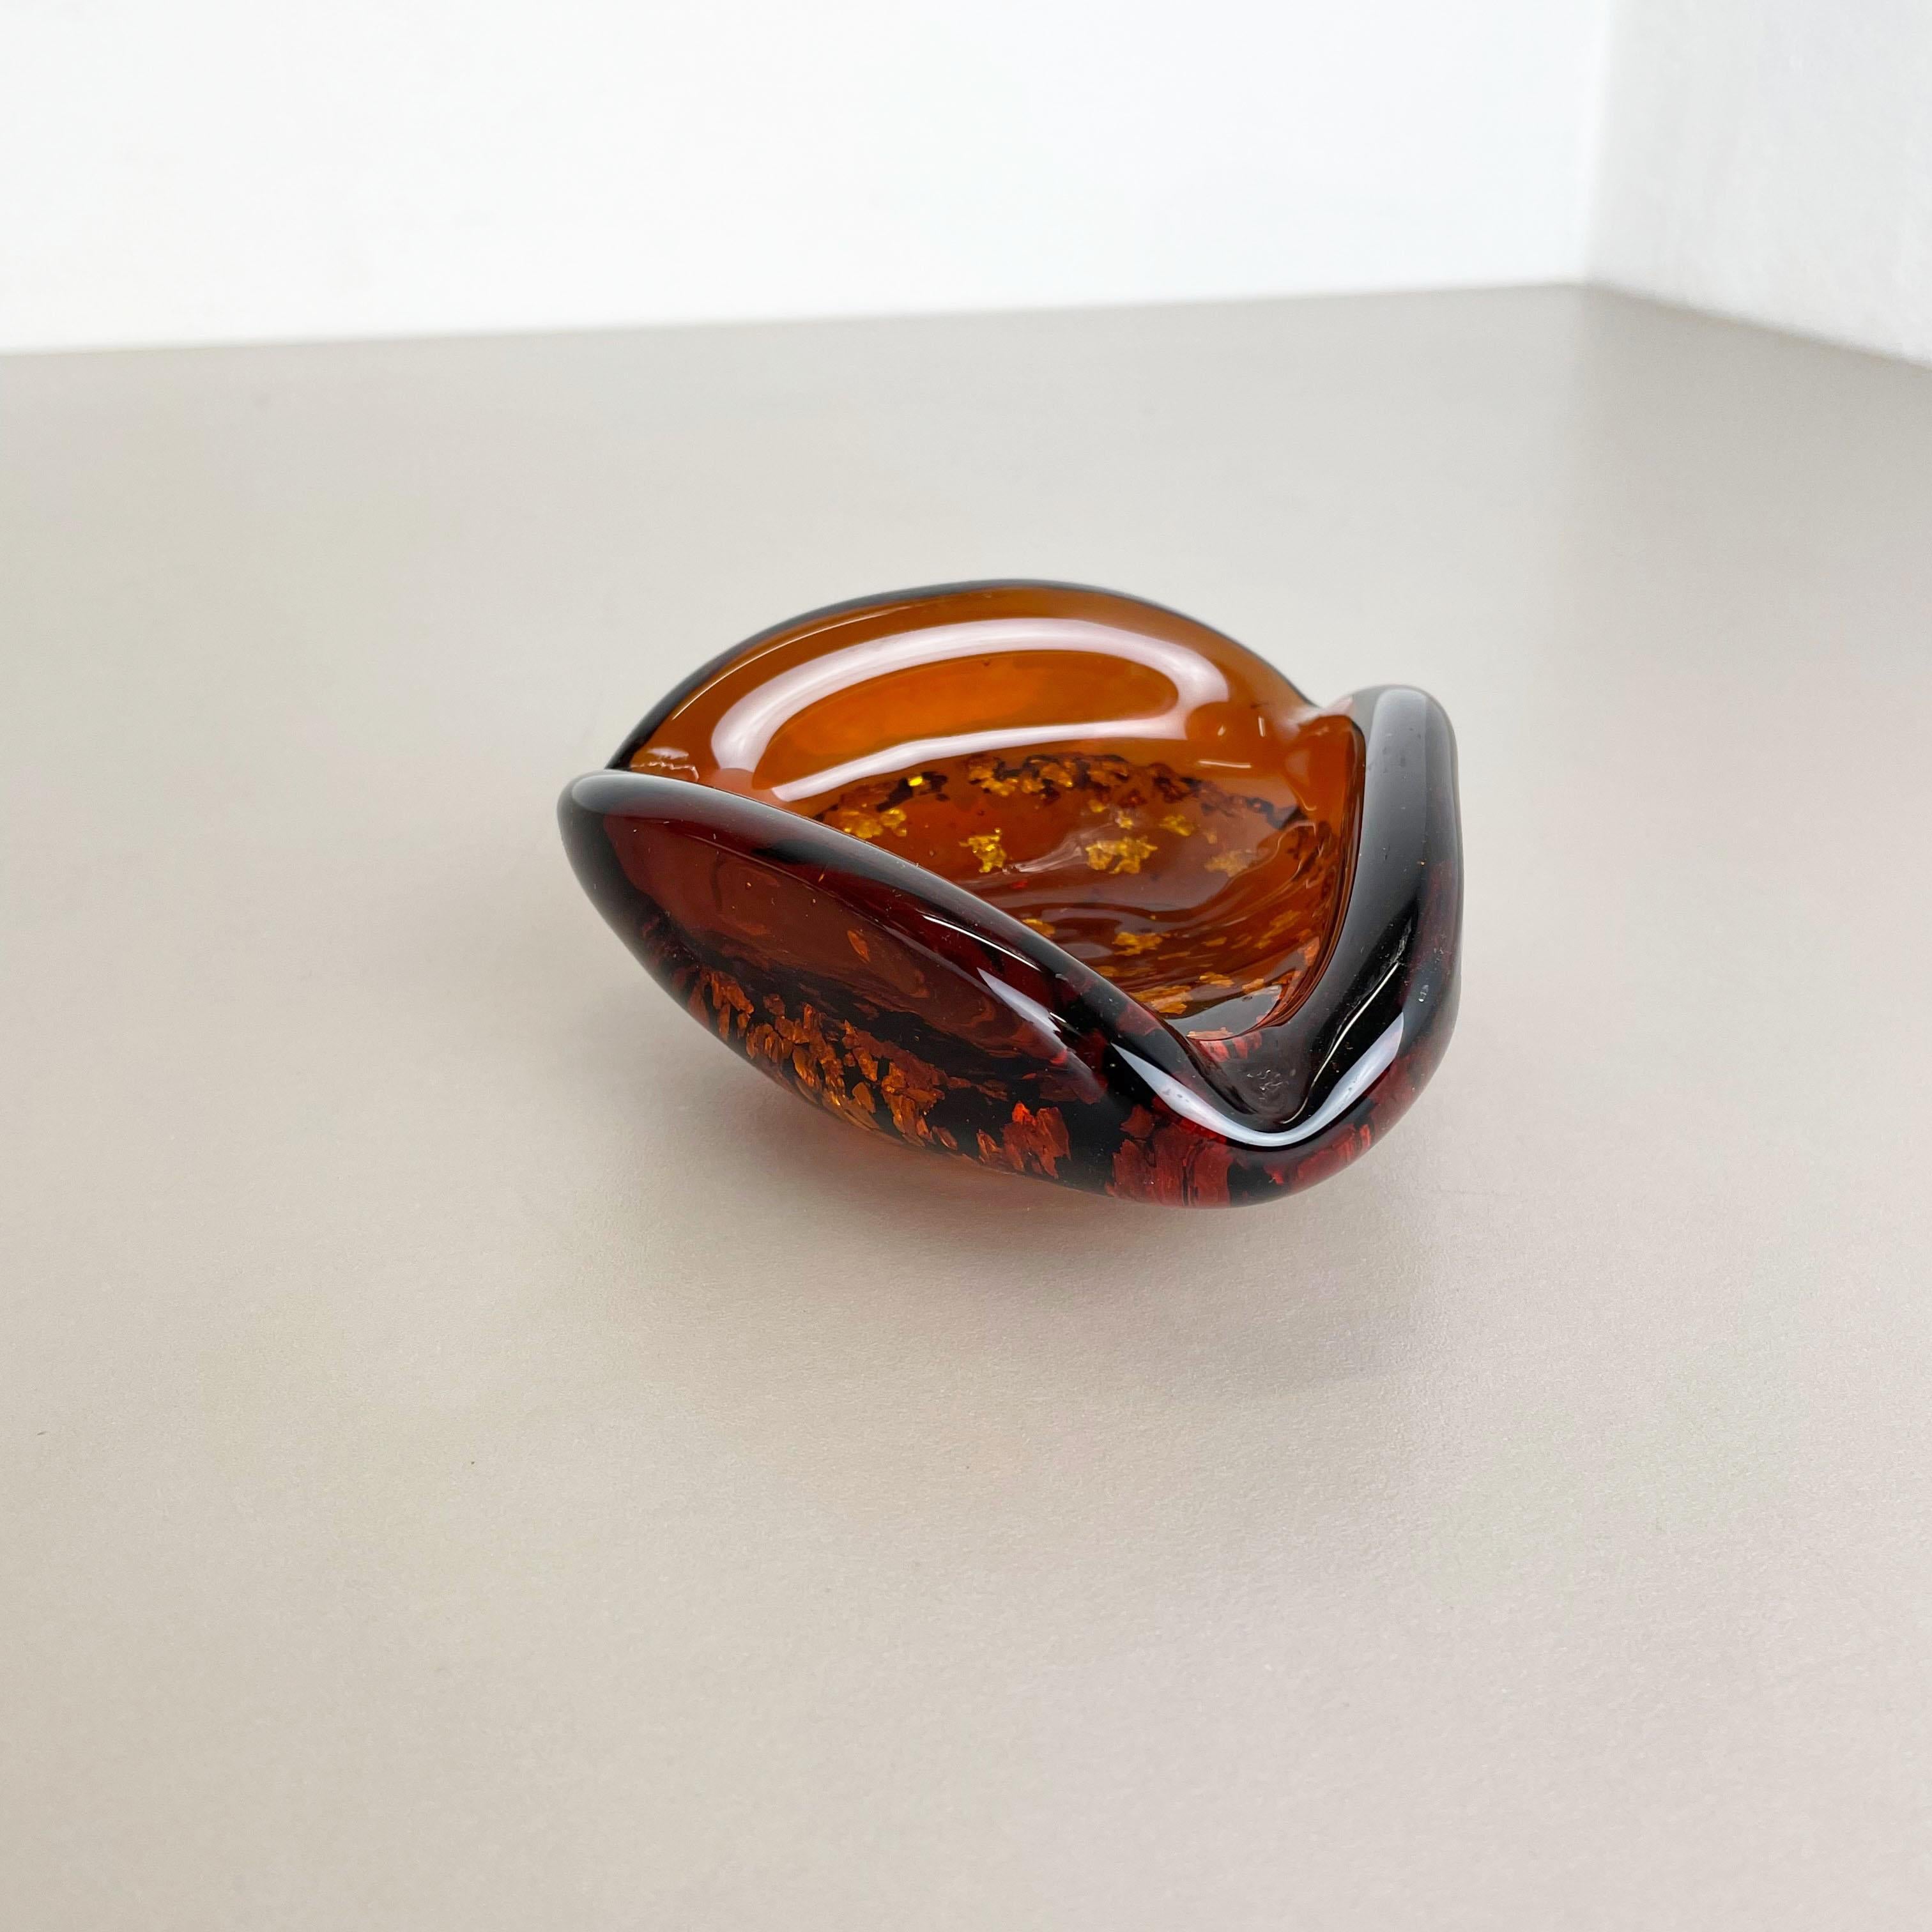 Artikel:

Muranoglasschale, Aschenbecher-Element


Herkunft:

Murano, Italien


Jahrzehnt:

1970s



Dieses originale Vintage-Glasschalen-Element, Aschenbecher, wurde in den 1970er Jahren in Murano, Italien, hergestellt. Sie ist in